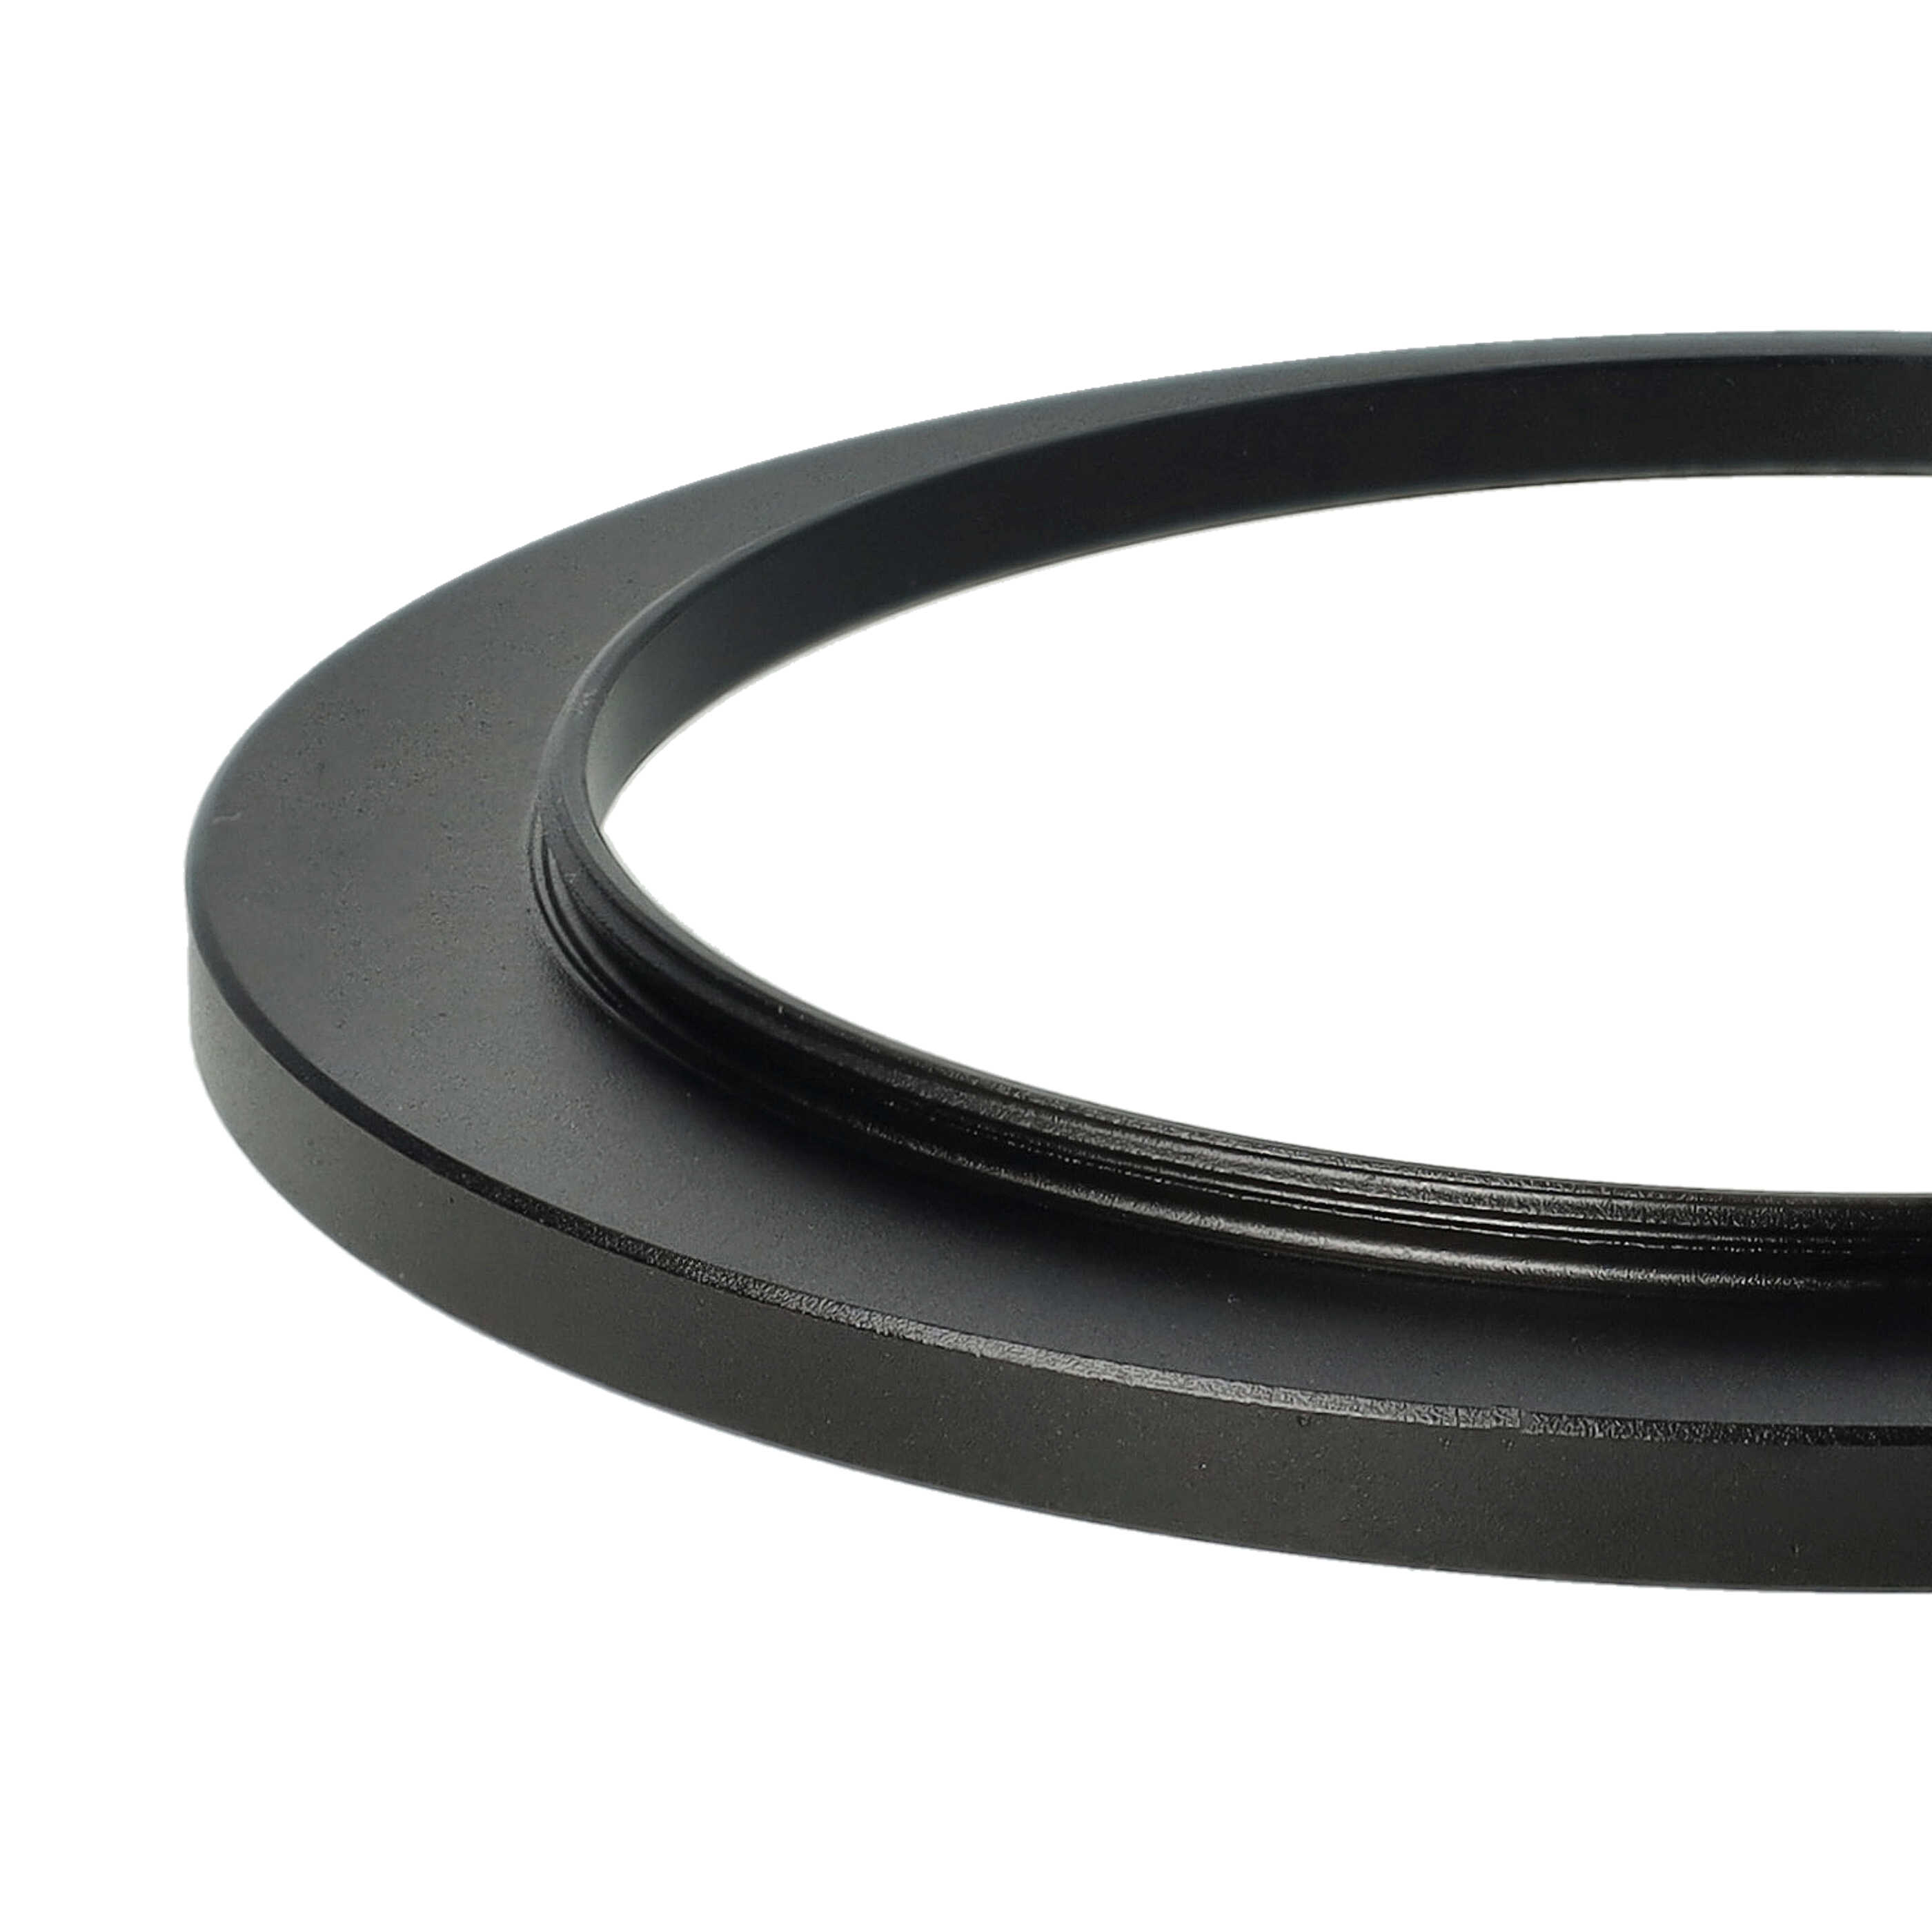 Step-Up-Ring Adapter 67 mm auf 82 mm passend für diverse Kamera-Objektive - Filteradapter